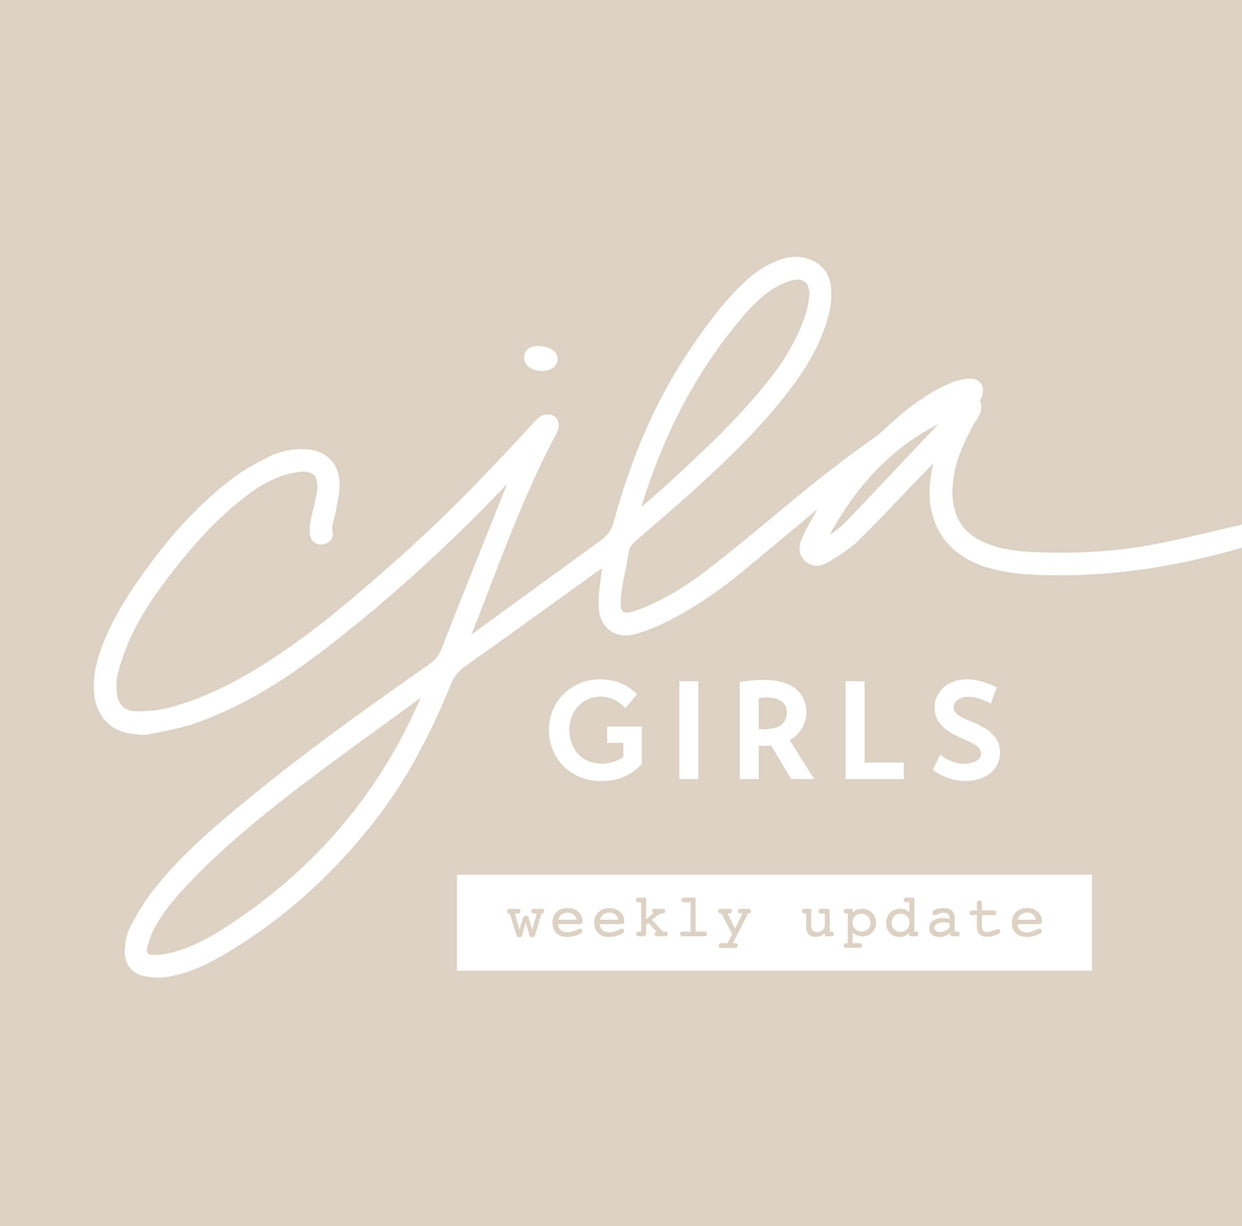 CJLA Girls Weekly Update: September 13-19